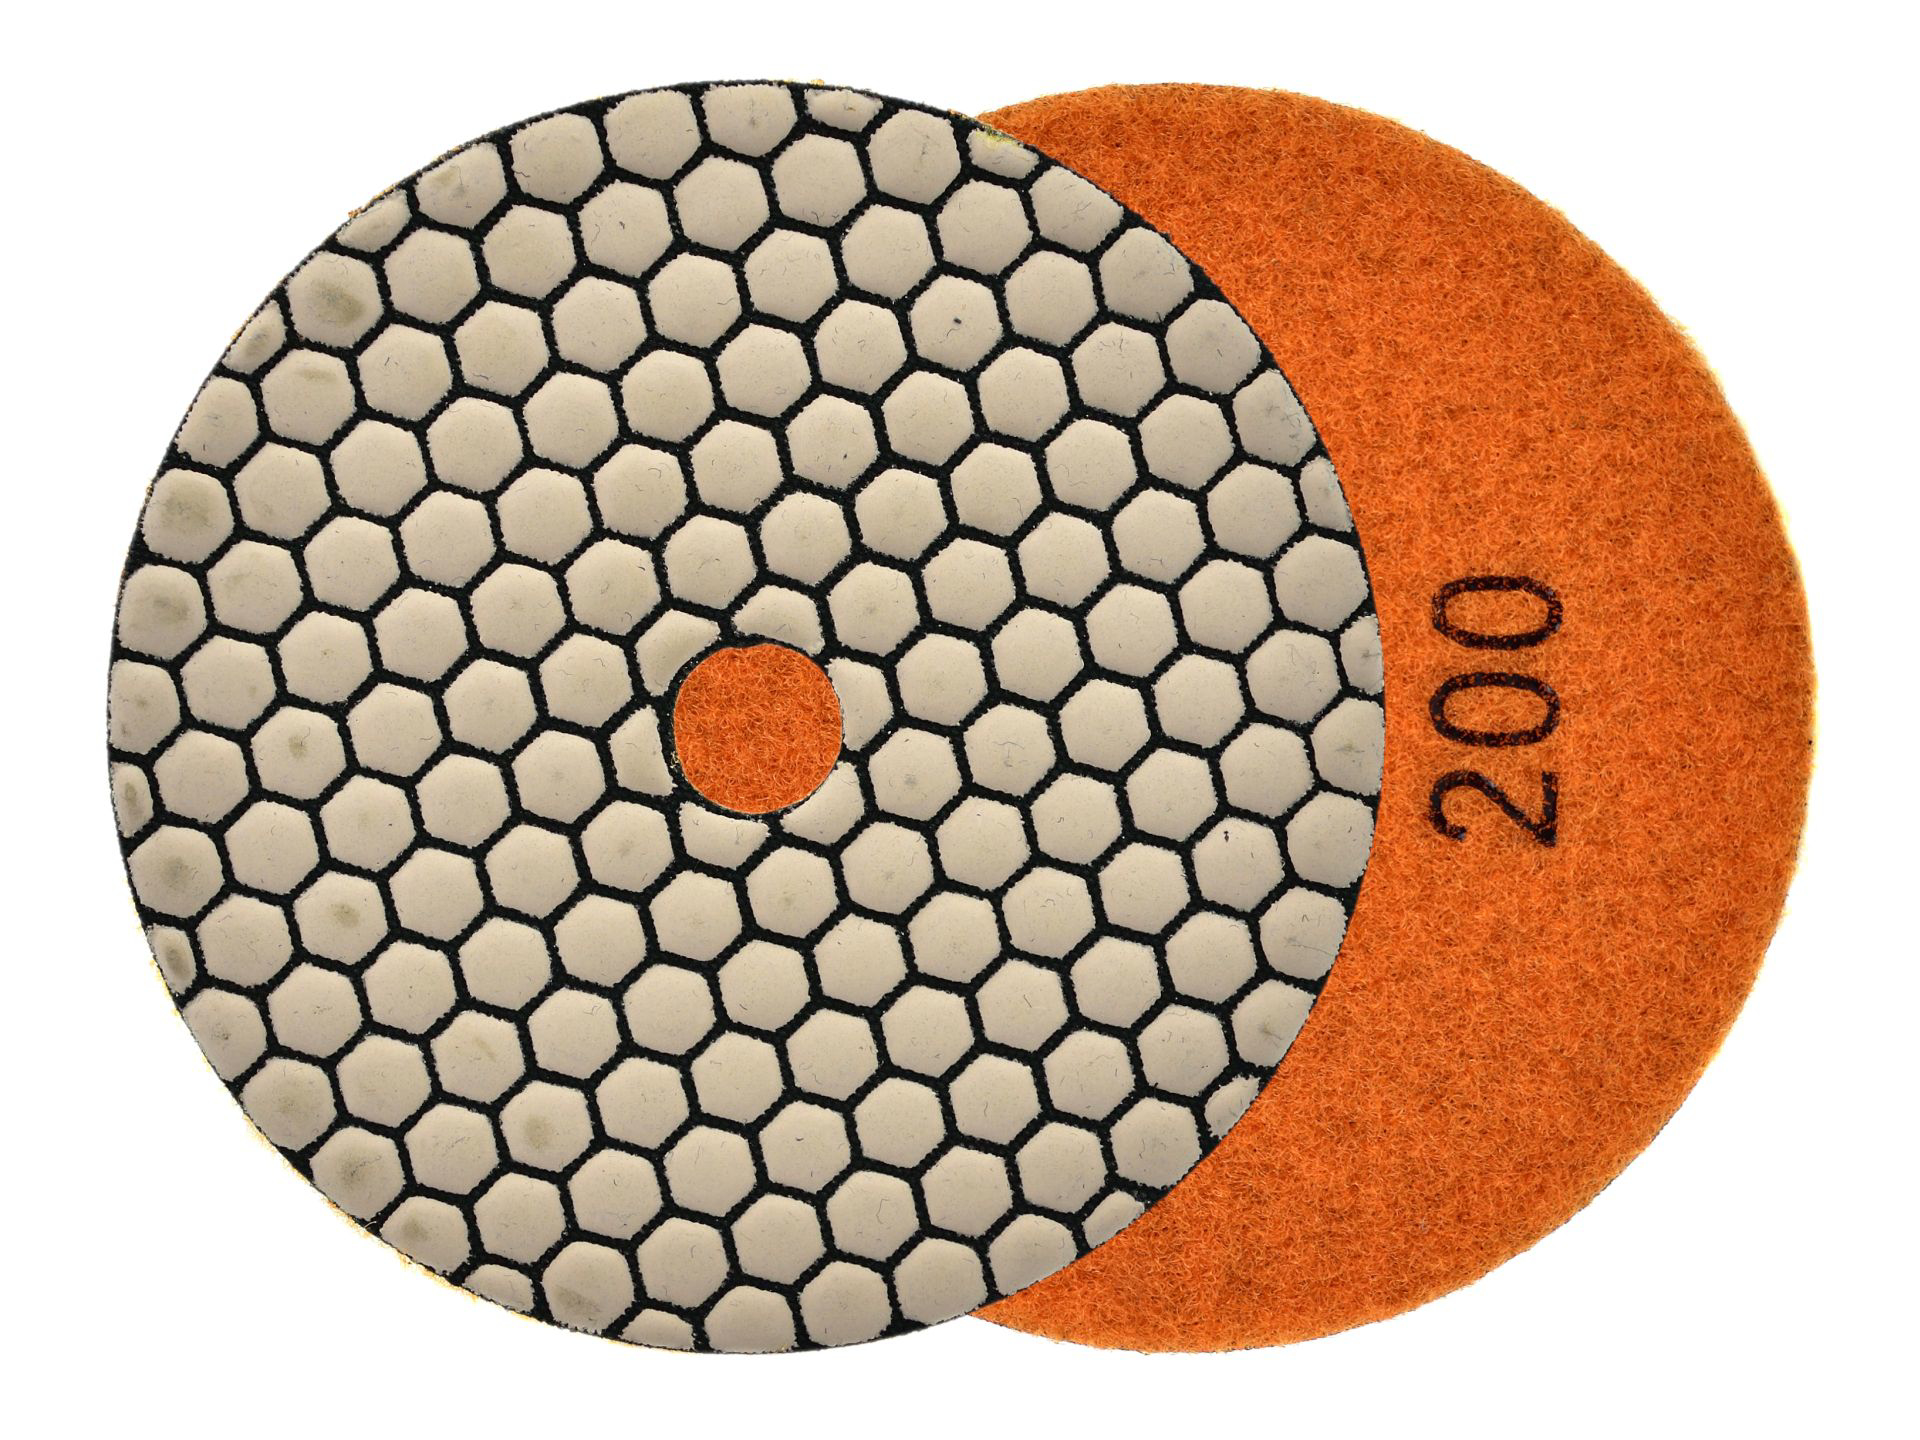 Disc pentru slefuirea uscata a gresiei portelanate, 125 mm, granulatie 200, Geko G78939